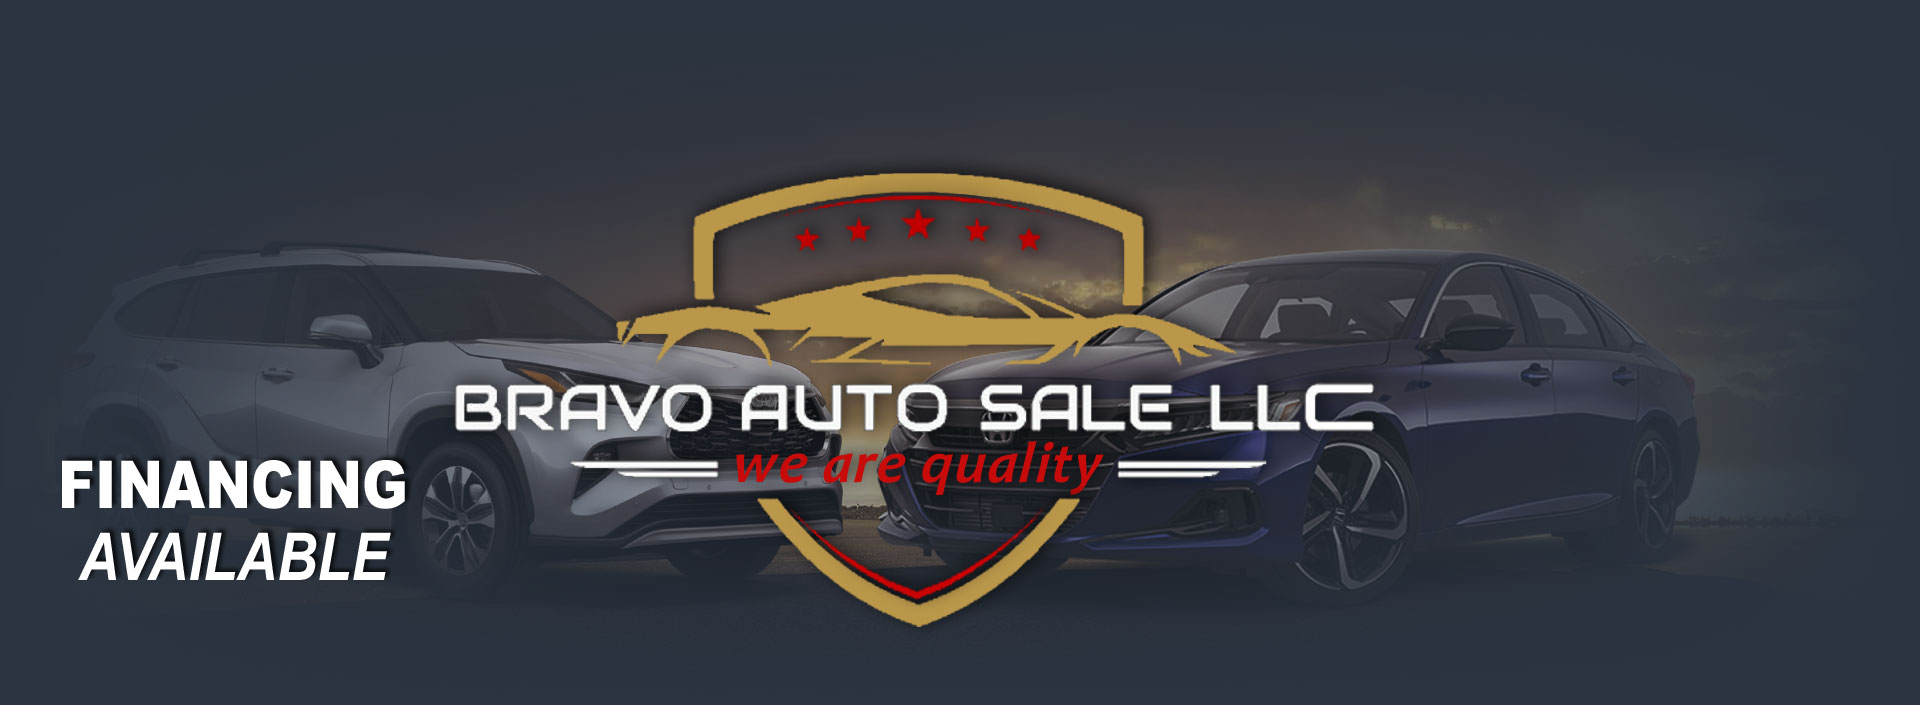 Bravo Auto Sale LLC